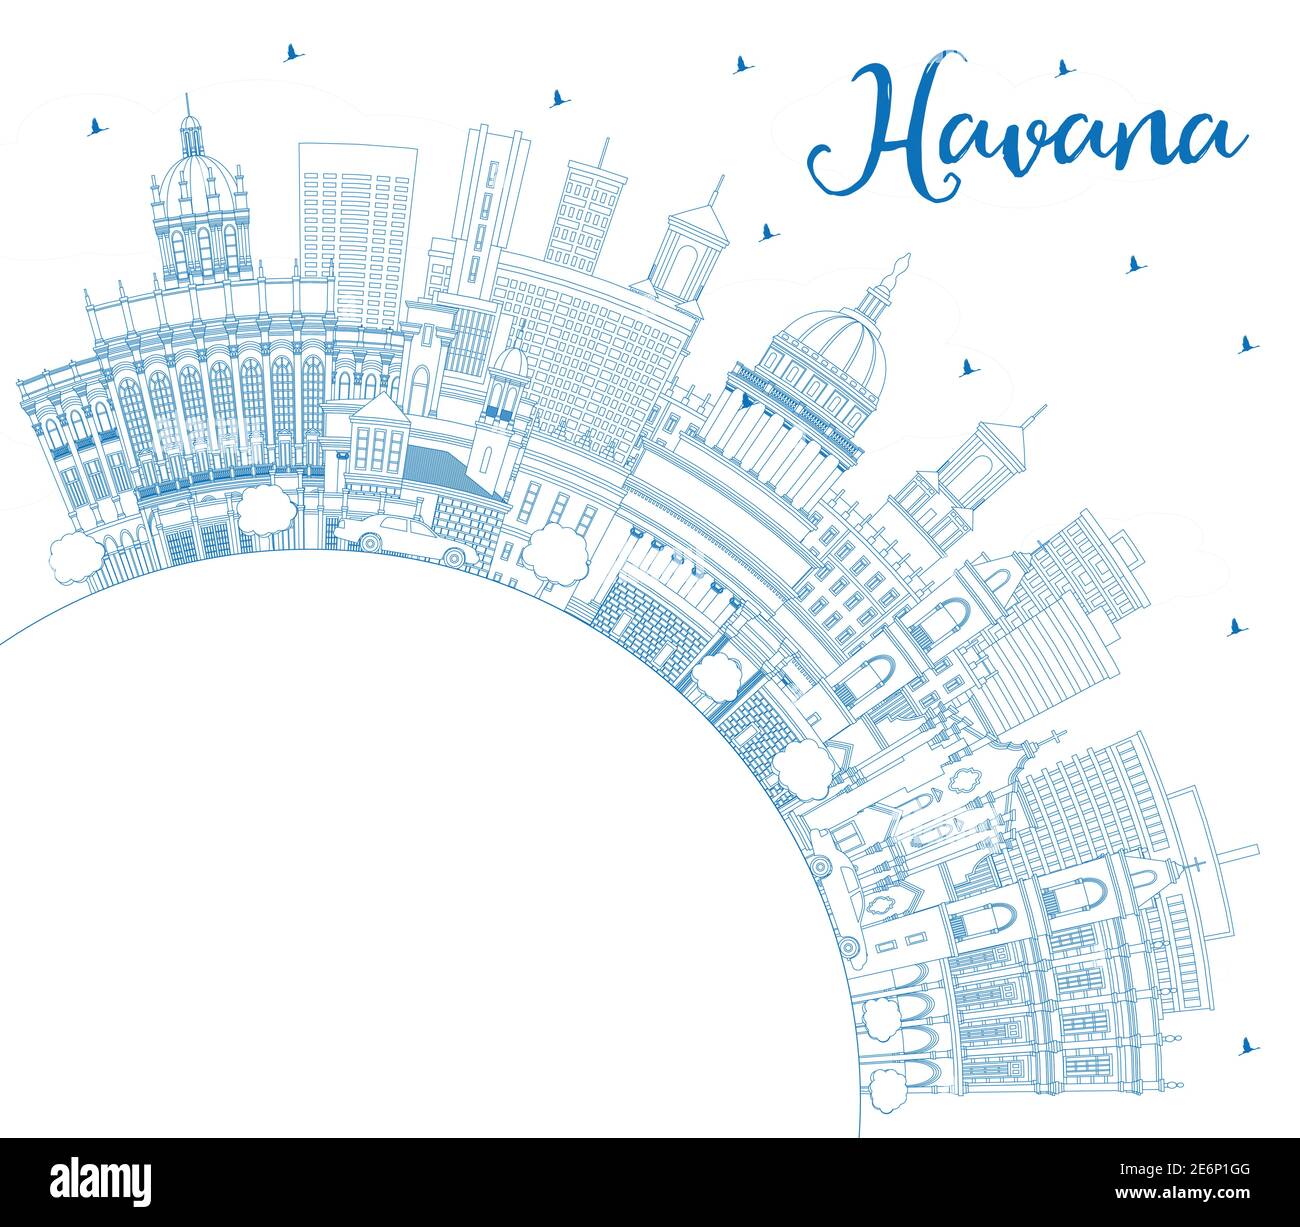 Profilo l'Avana Cuba City Skyline con edifici blu e Copy Space. Illustrazione vettoriale. Concetto turistico con architettura storica e moderna. Illustrazione Vettoriale